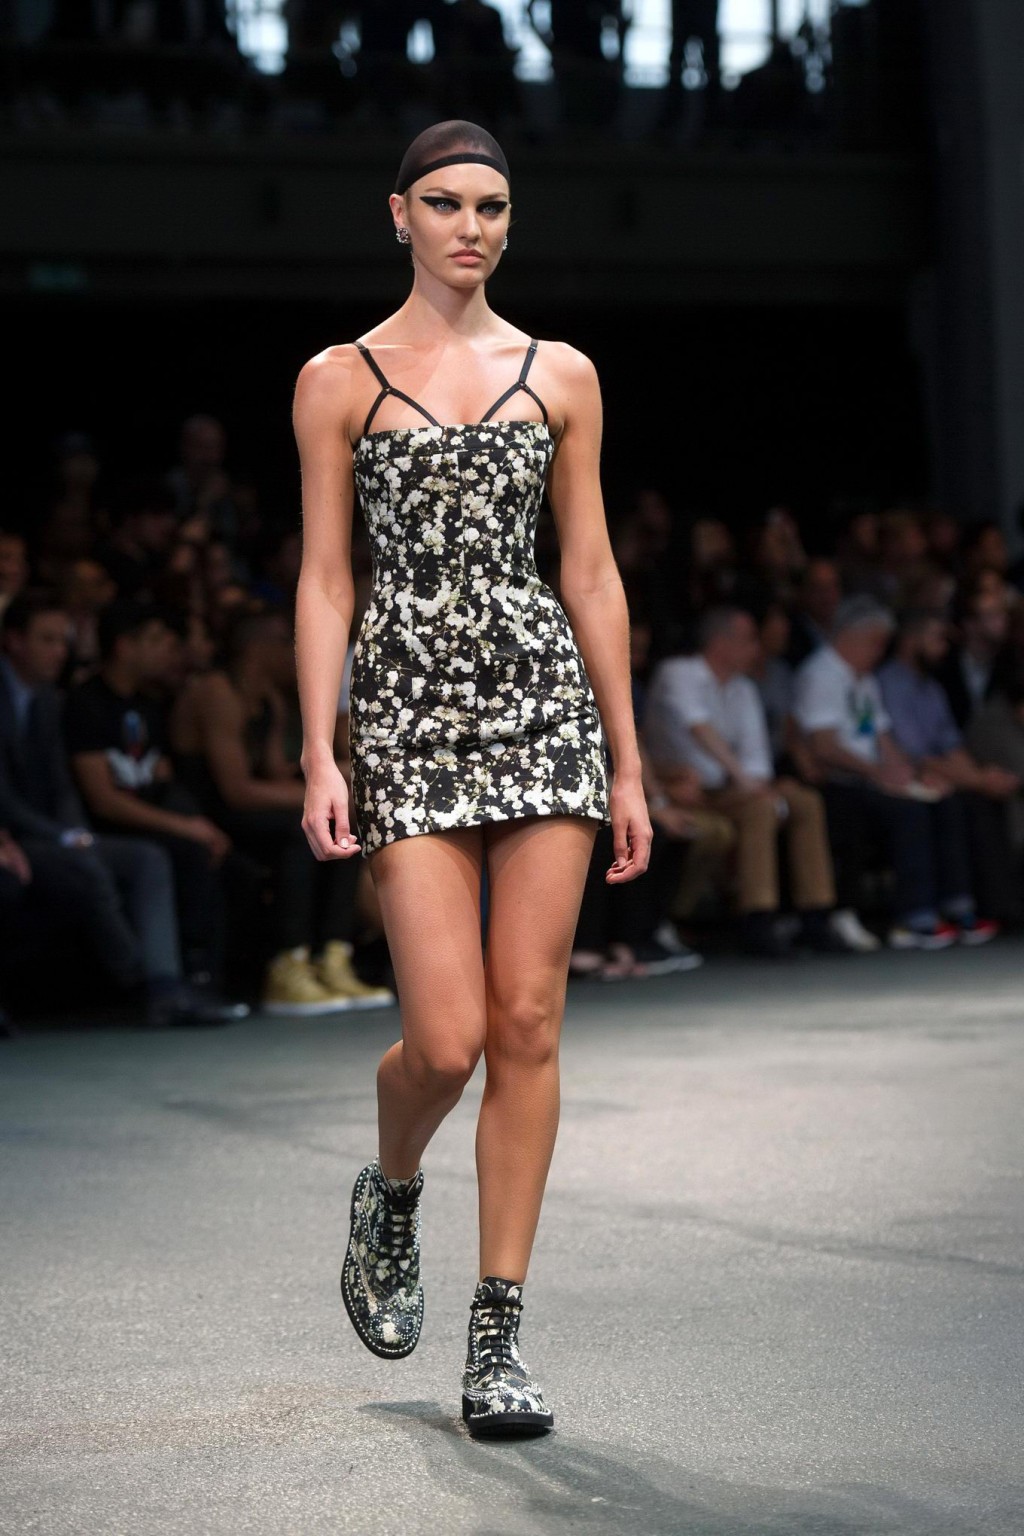 Candice swanepoel en mini-robe tube au défilé de mode givenchy à paris.
 #75192476